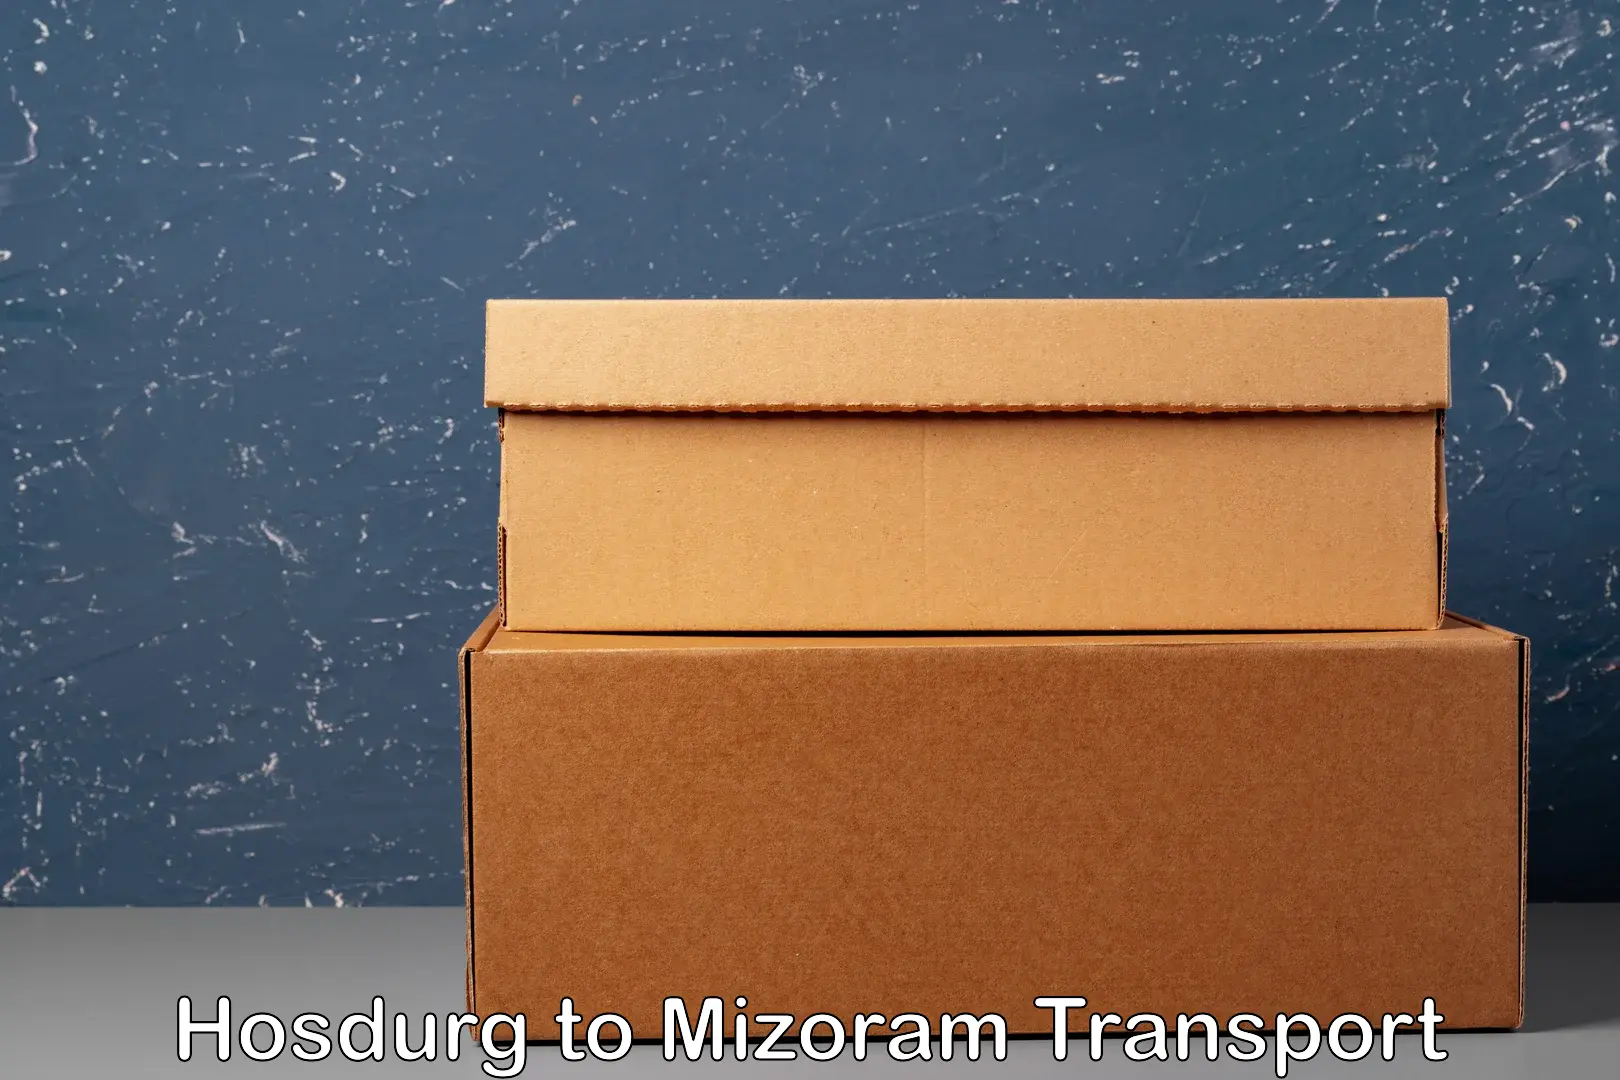 Cargo transport services Hosdurg to Mizoram